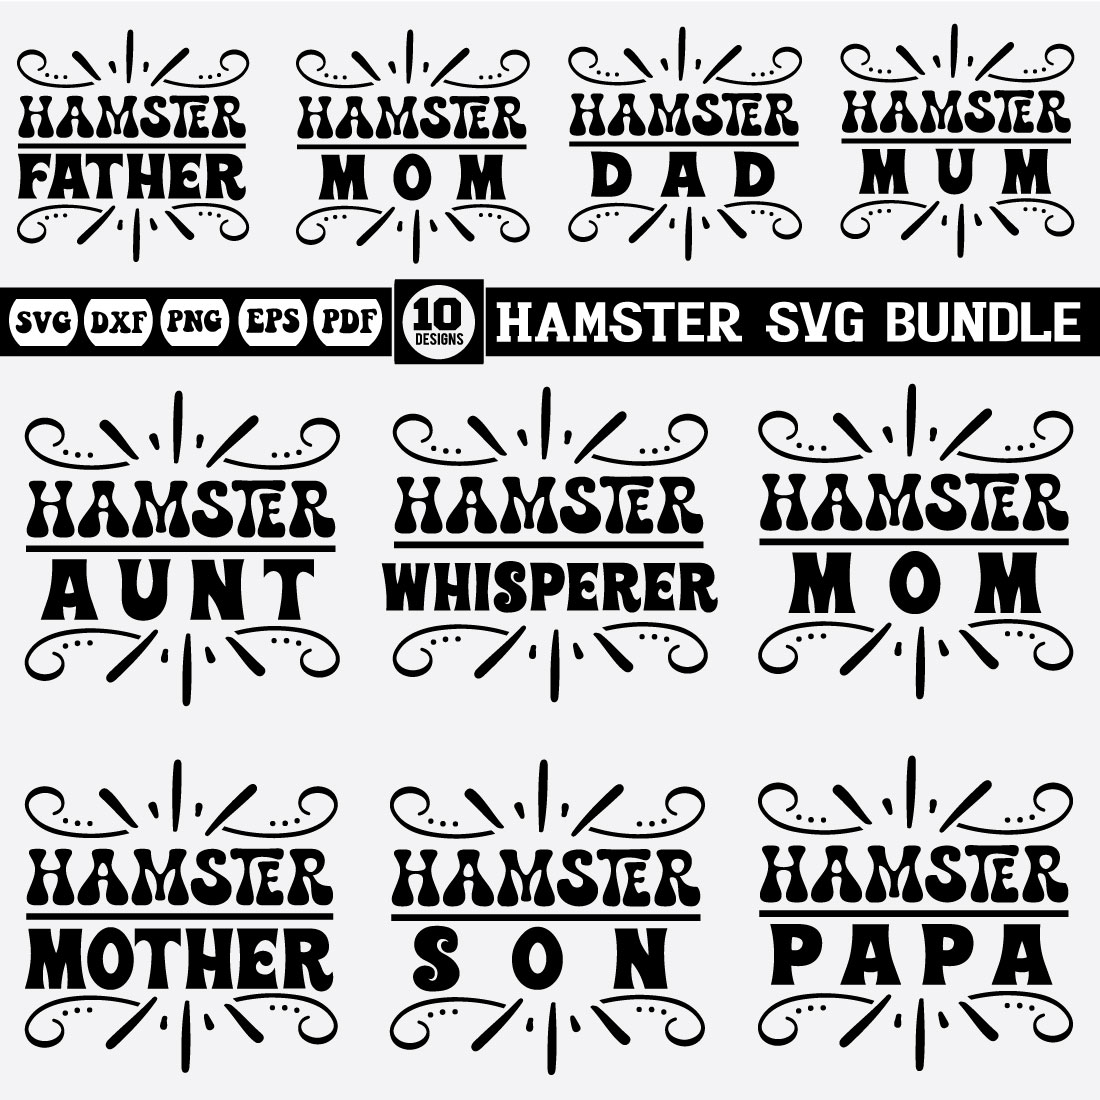 Hamster Bundle cover image.